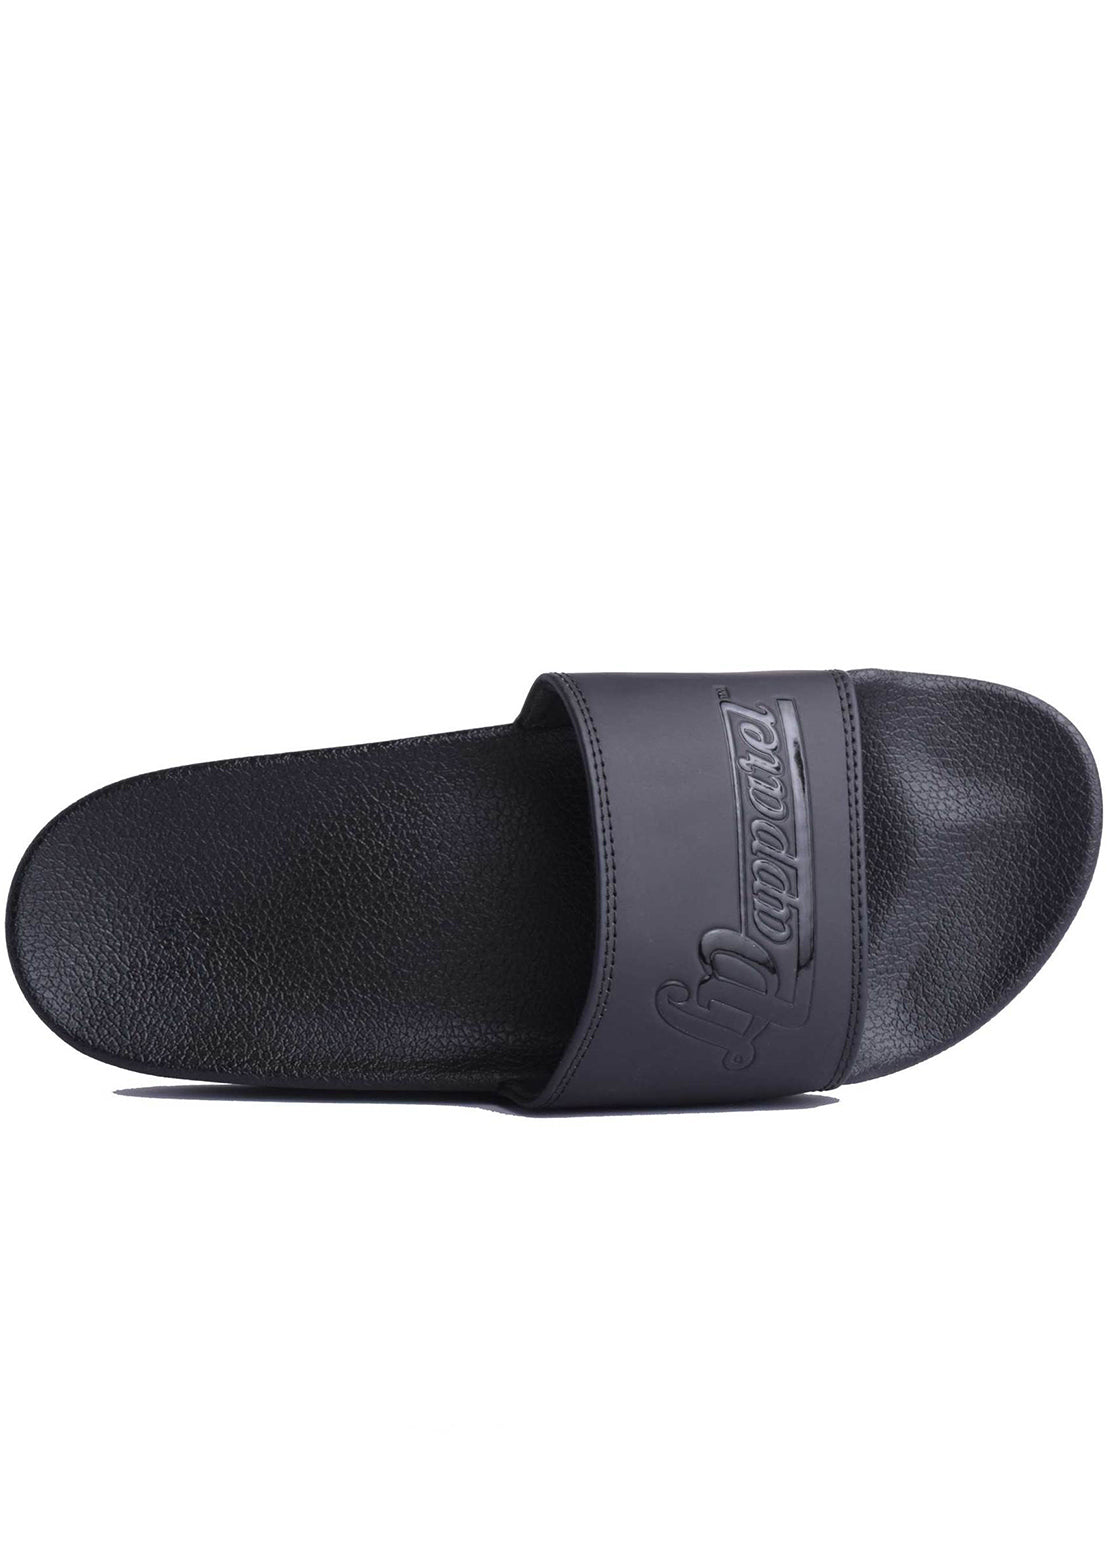 L&amp;P Junior Slide Sandals Black On Black